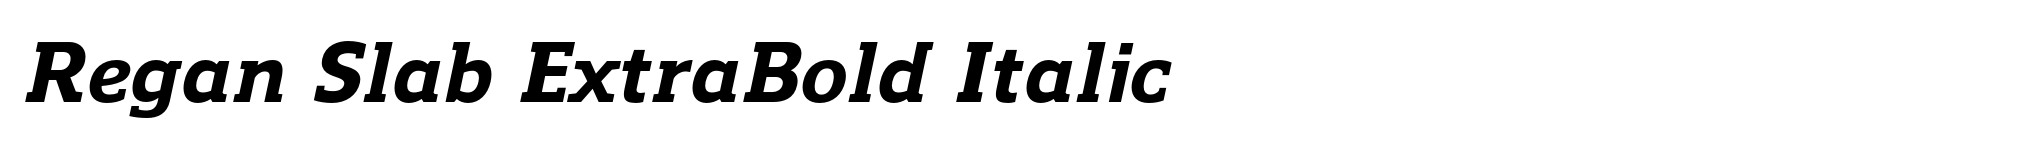 Regan Slab ExtraBold Italic image